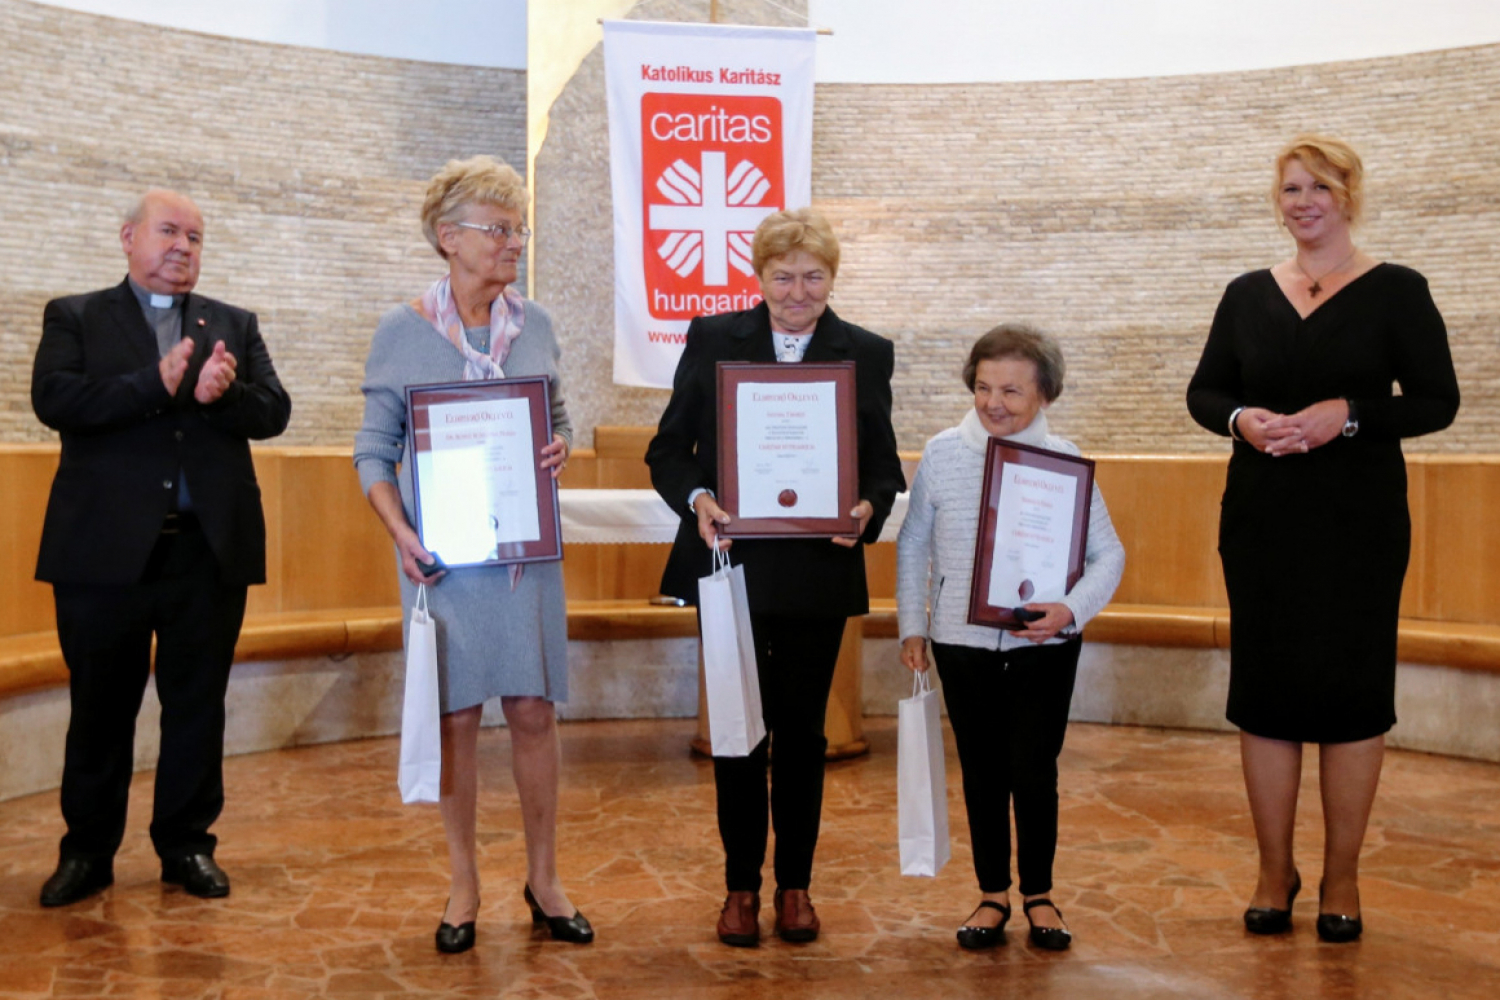 Három különleges somogyi asszony is kiérdemelte a Caritas Hungarica díjat